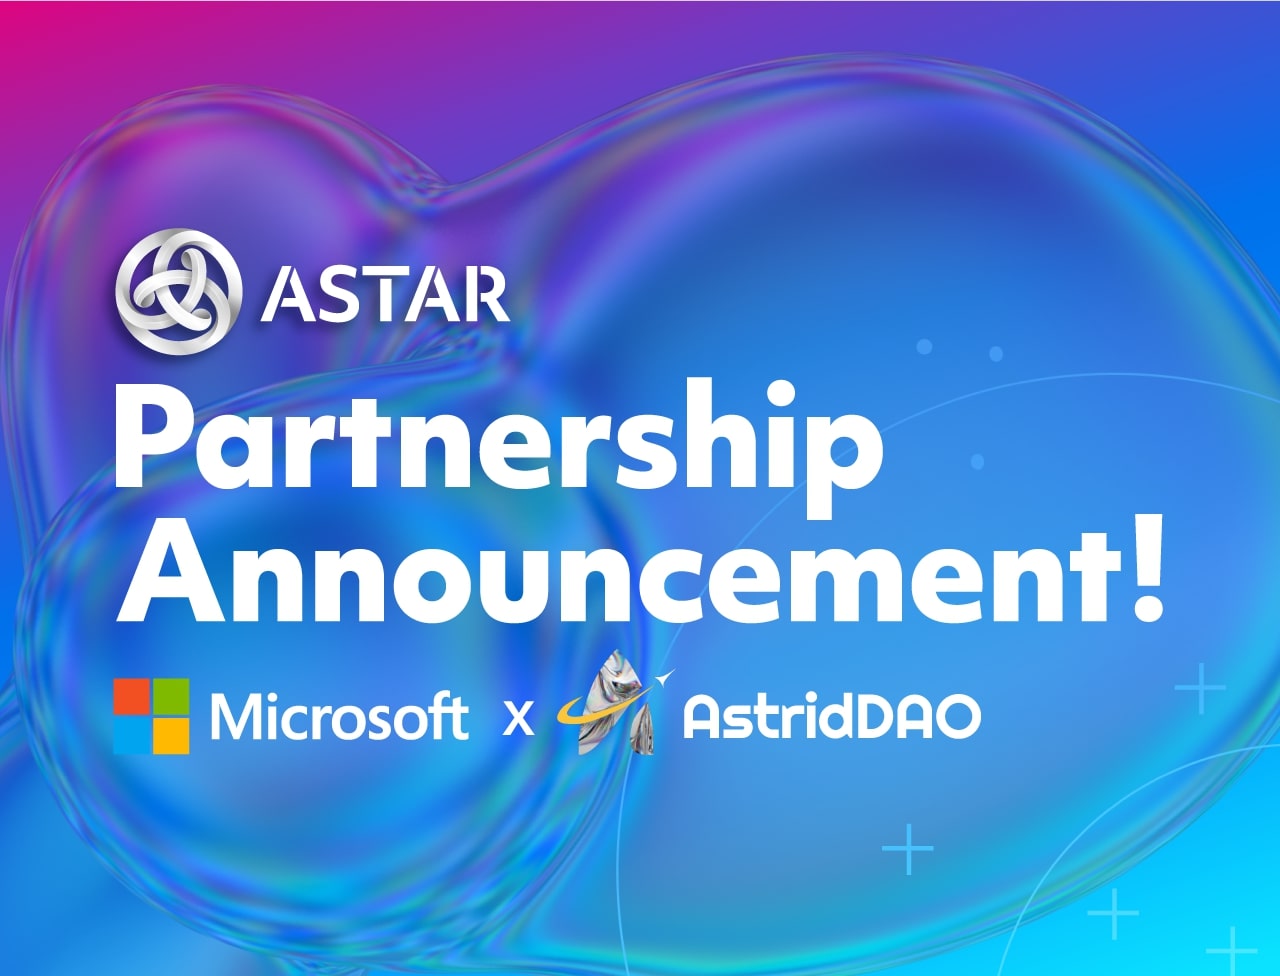 AstridDAO đã chính thức công bố quan hệ đối tác của họ với Microsoft